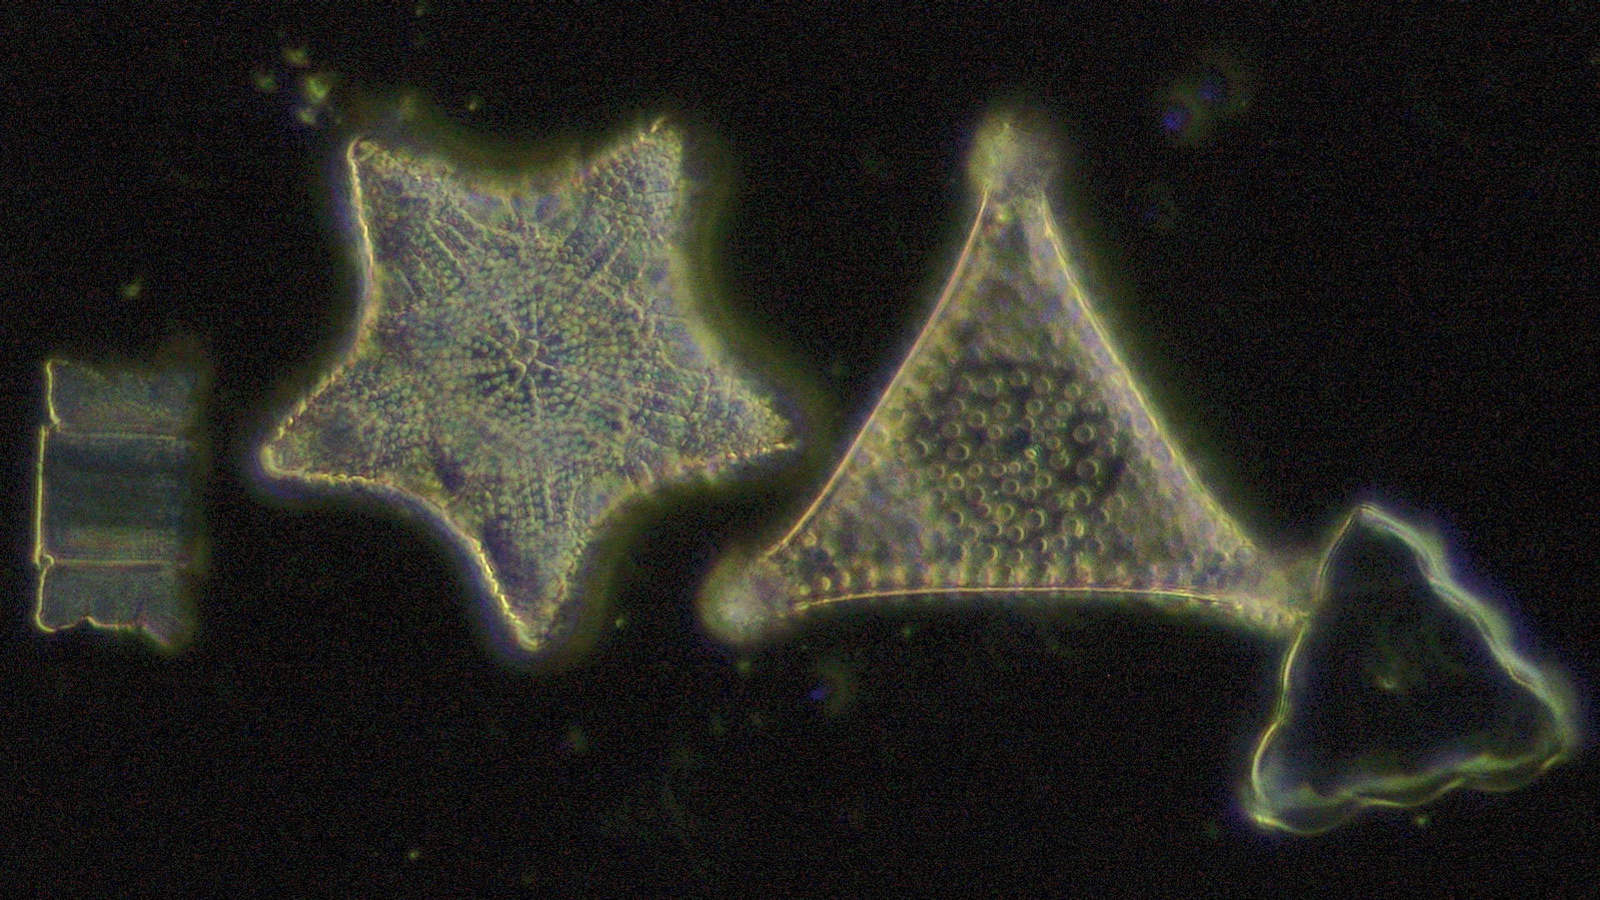 ニコン顕微鏡Eclipse Si サンプル画像 珪藻、暗視野無染色